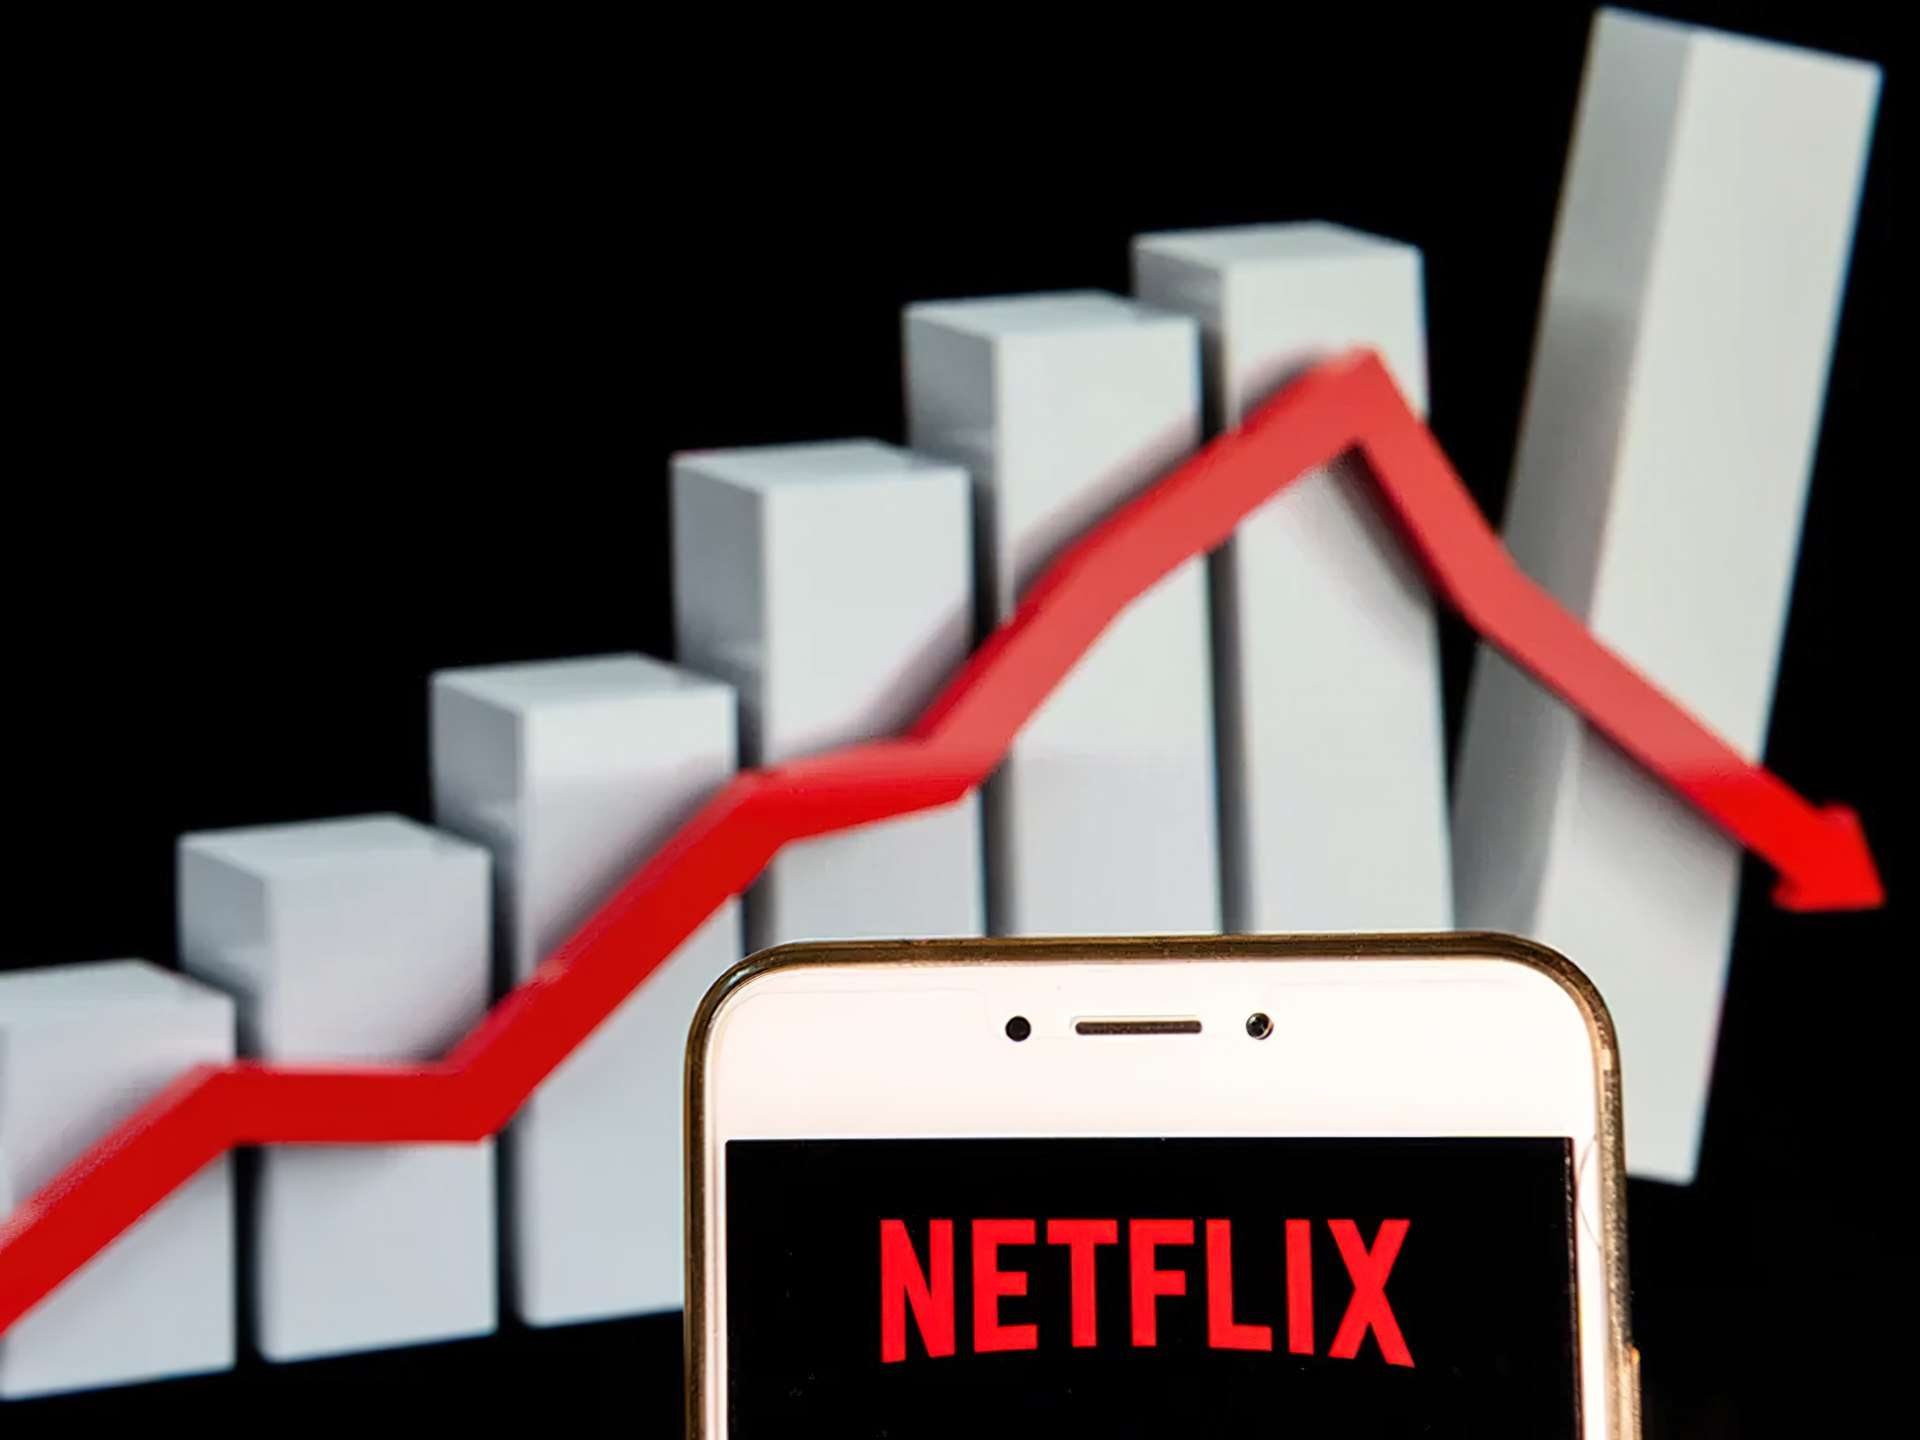 Perché Netflix ha perso abbonati per la prima volta in un decennio?